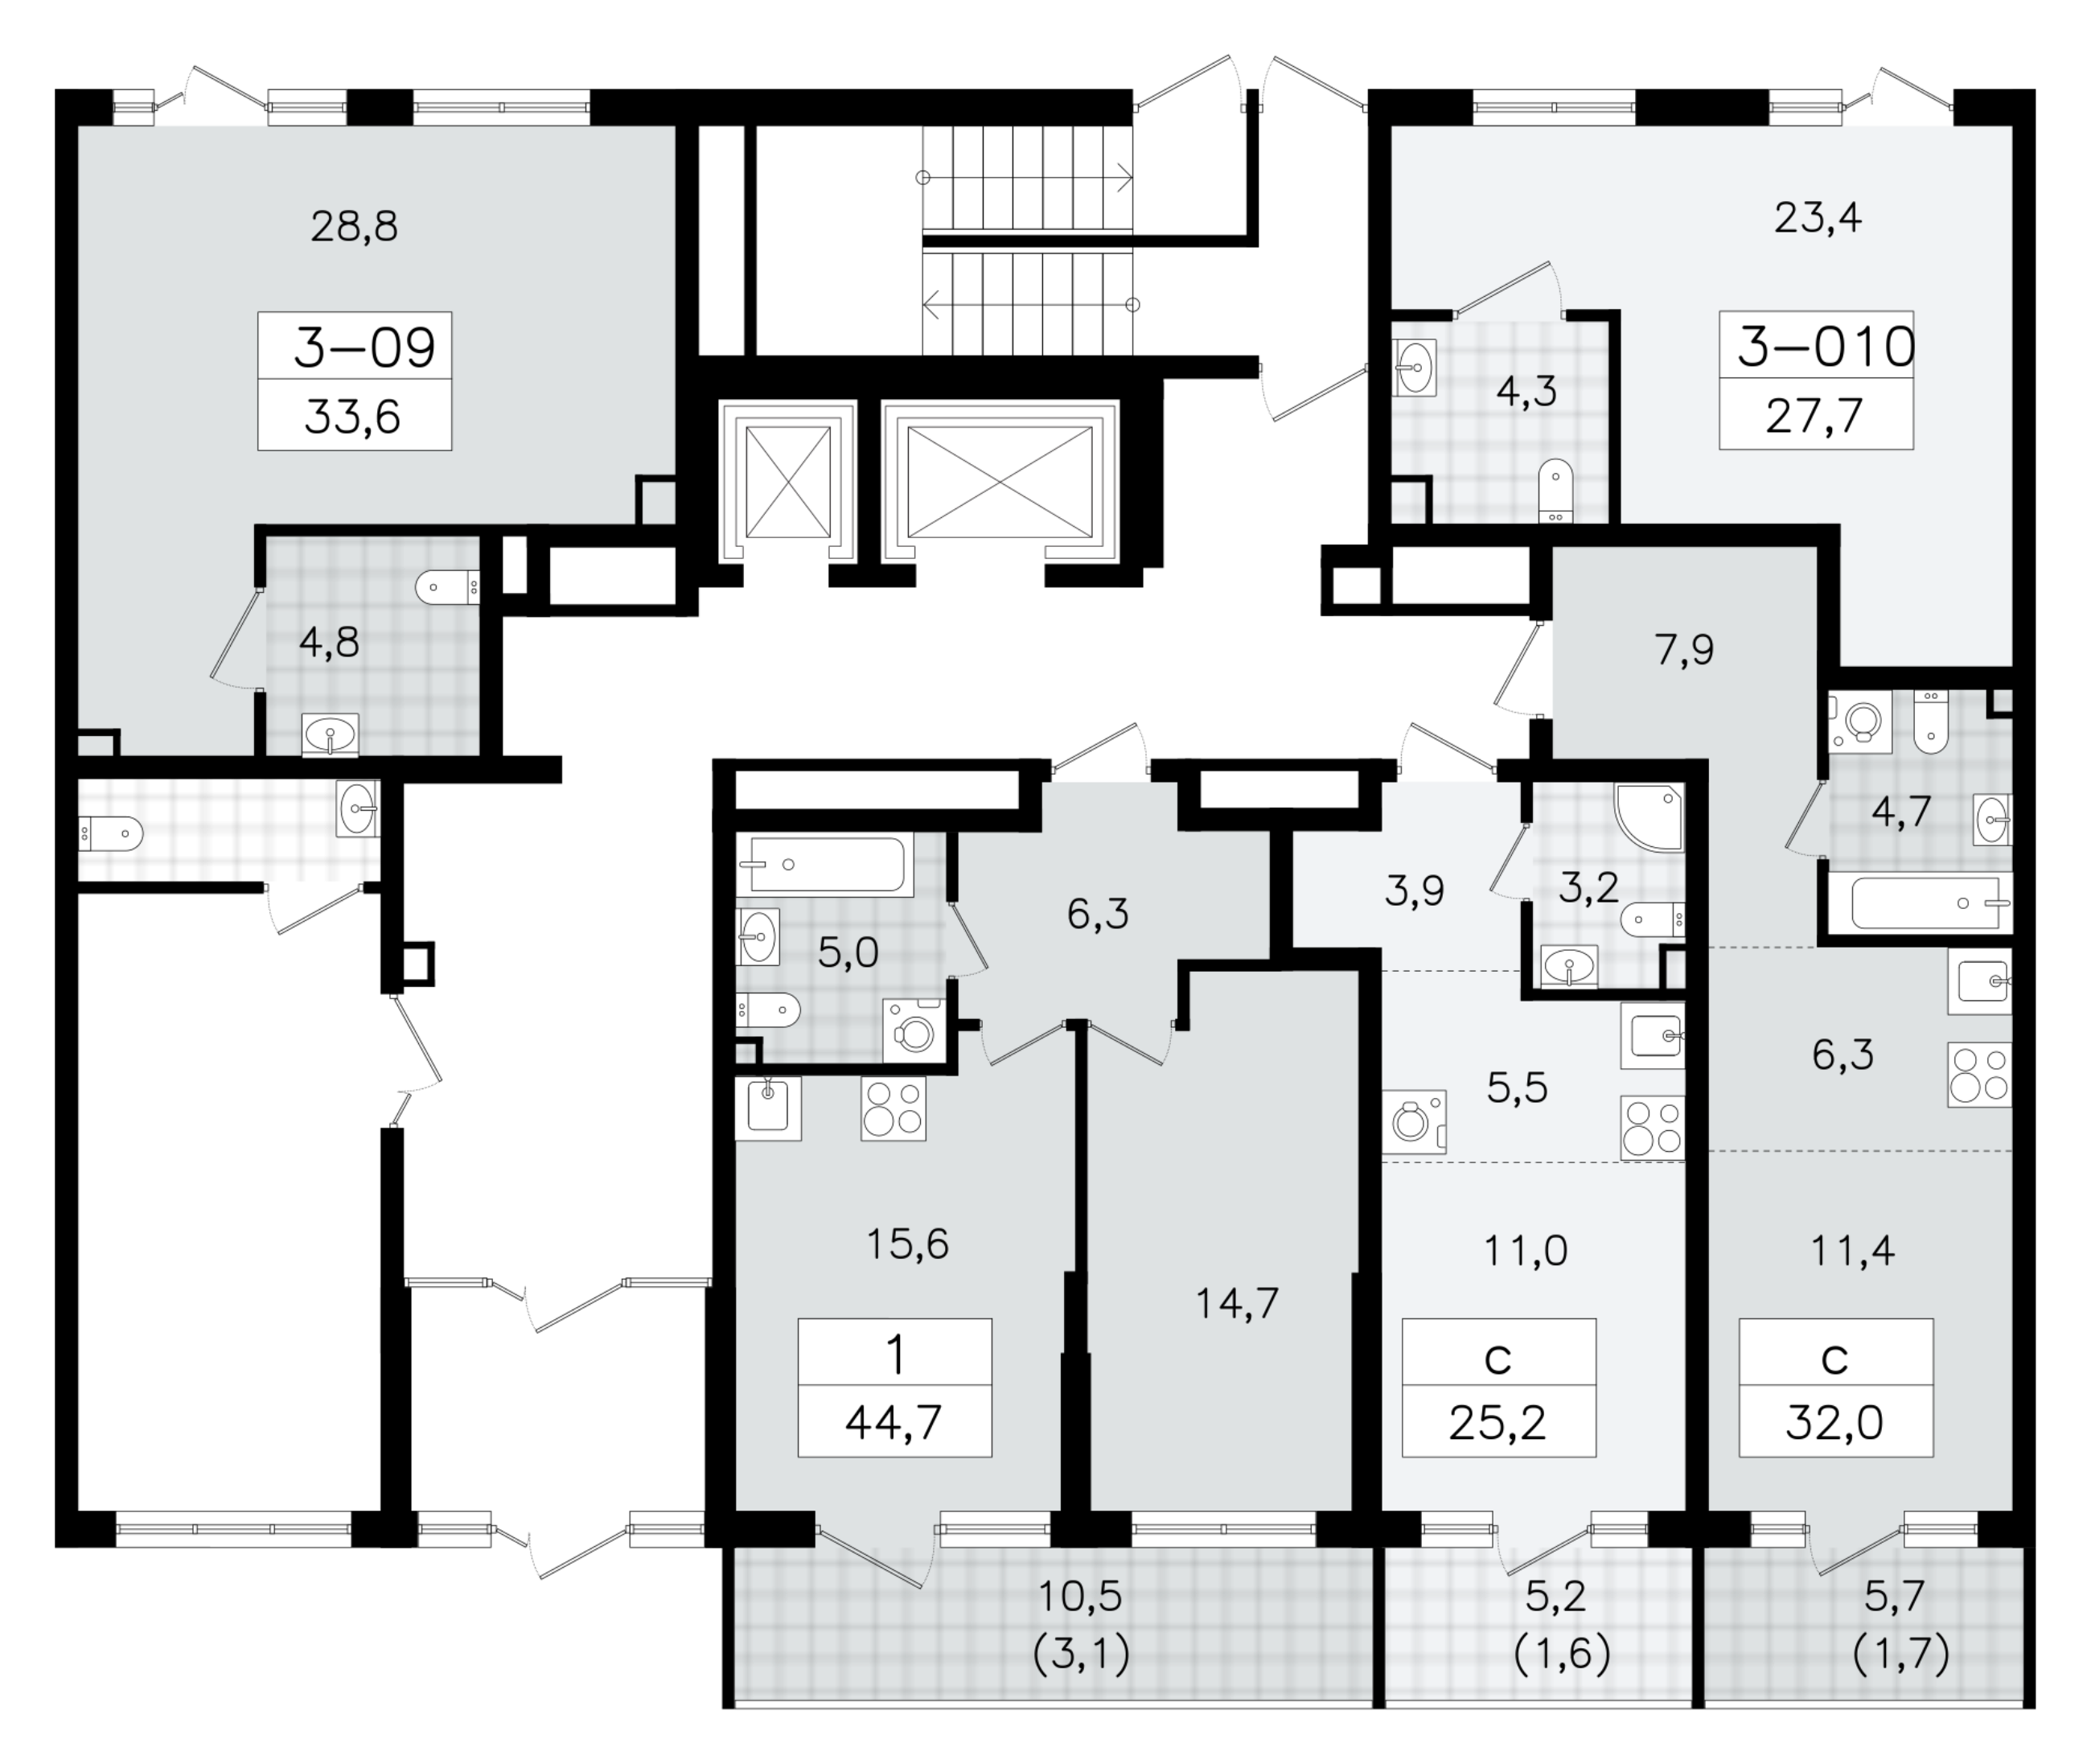 Помещение, 27.7 м² - планировка этажа